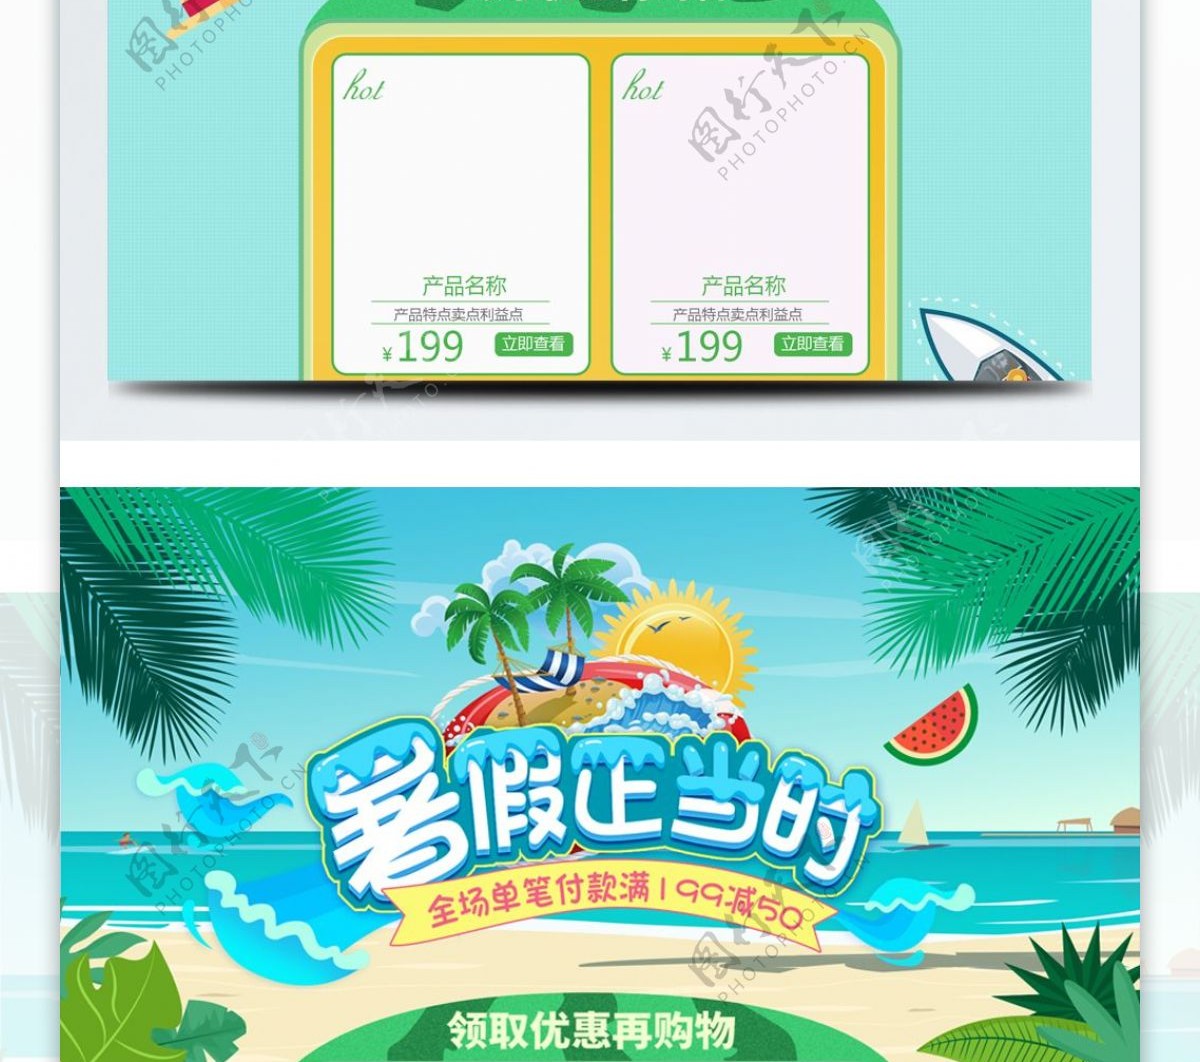 清新夏季夏日暑假促销淘宝首页